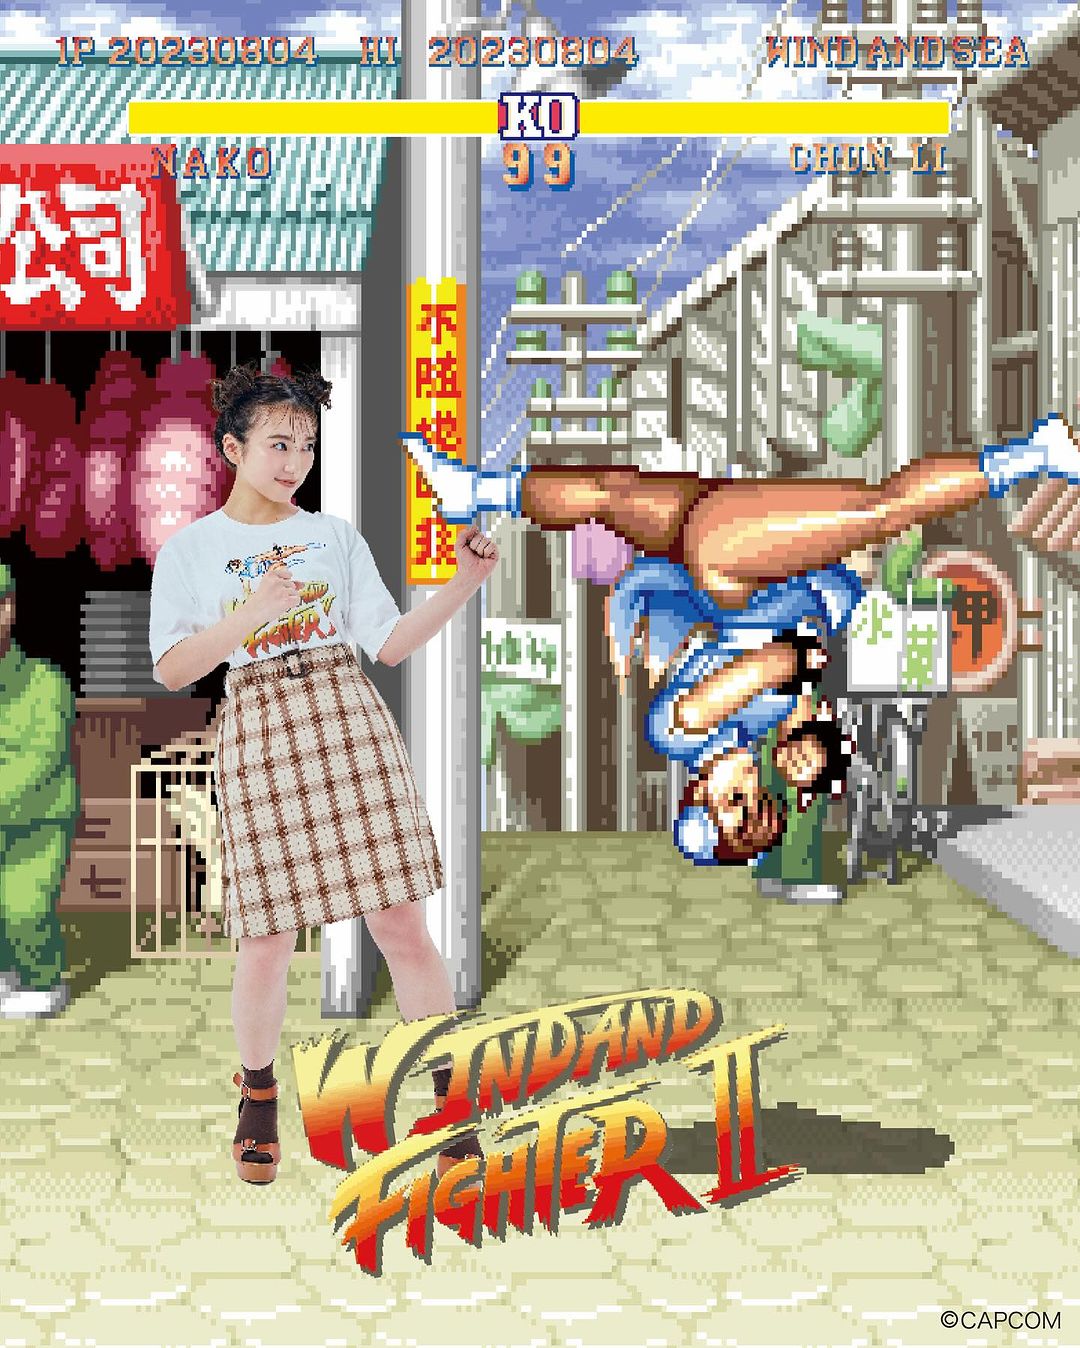 【2024年 4/28 発売】ストII × ウィンダンシー コラボレーション (ストリートファイター 2 STREET FIGHTER II WIND AND SEA)